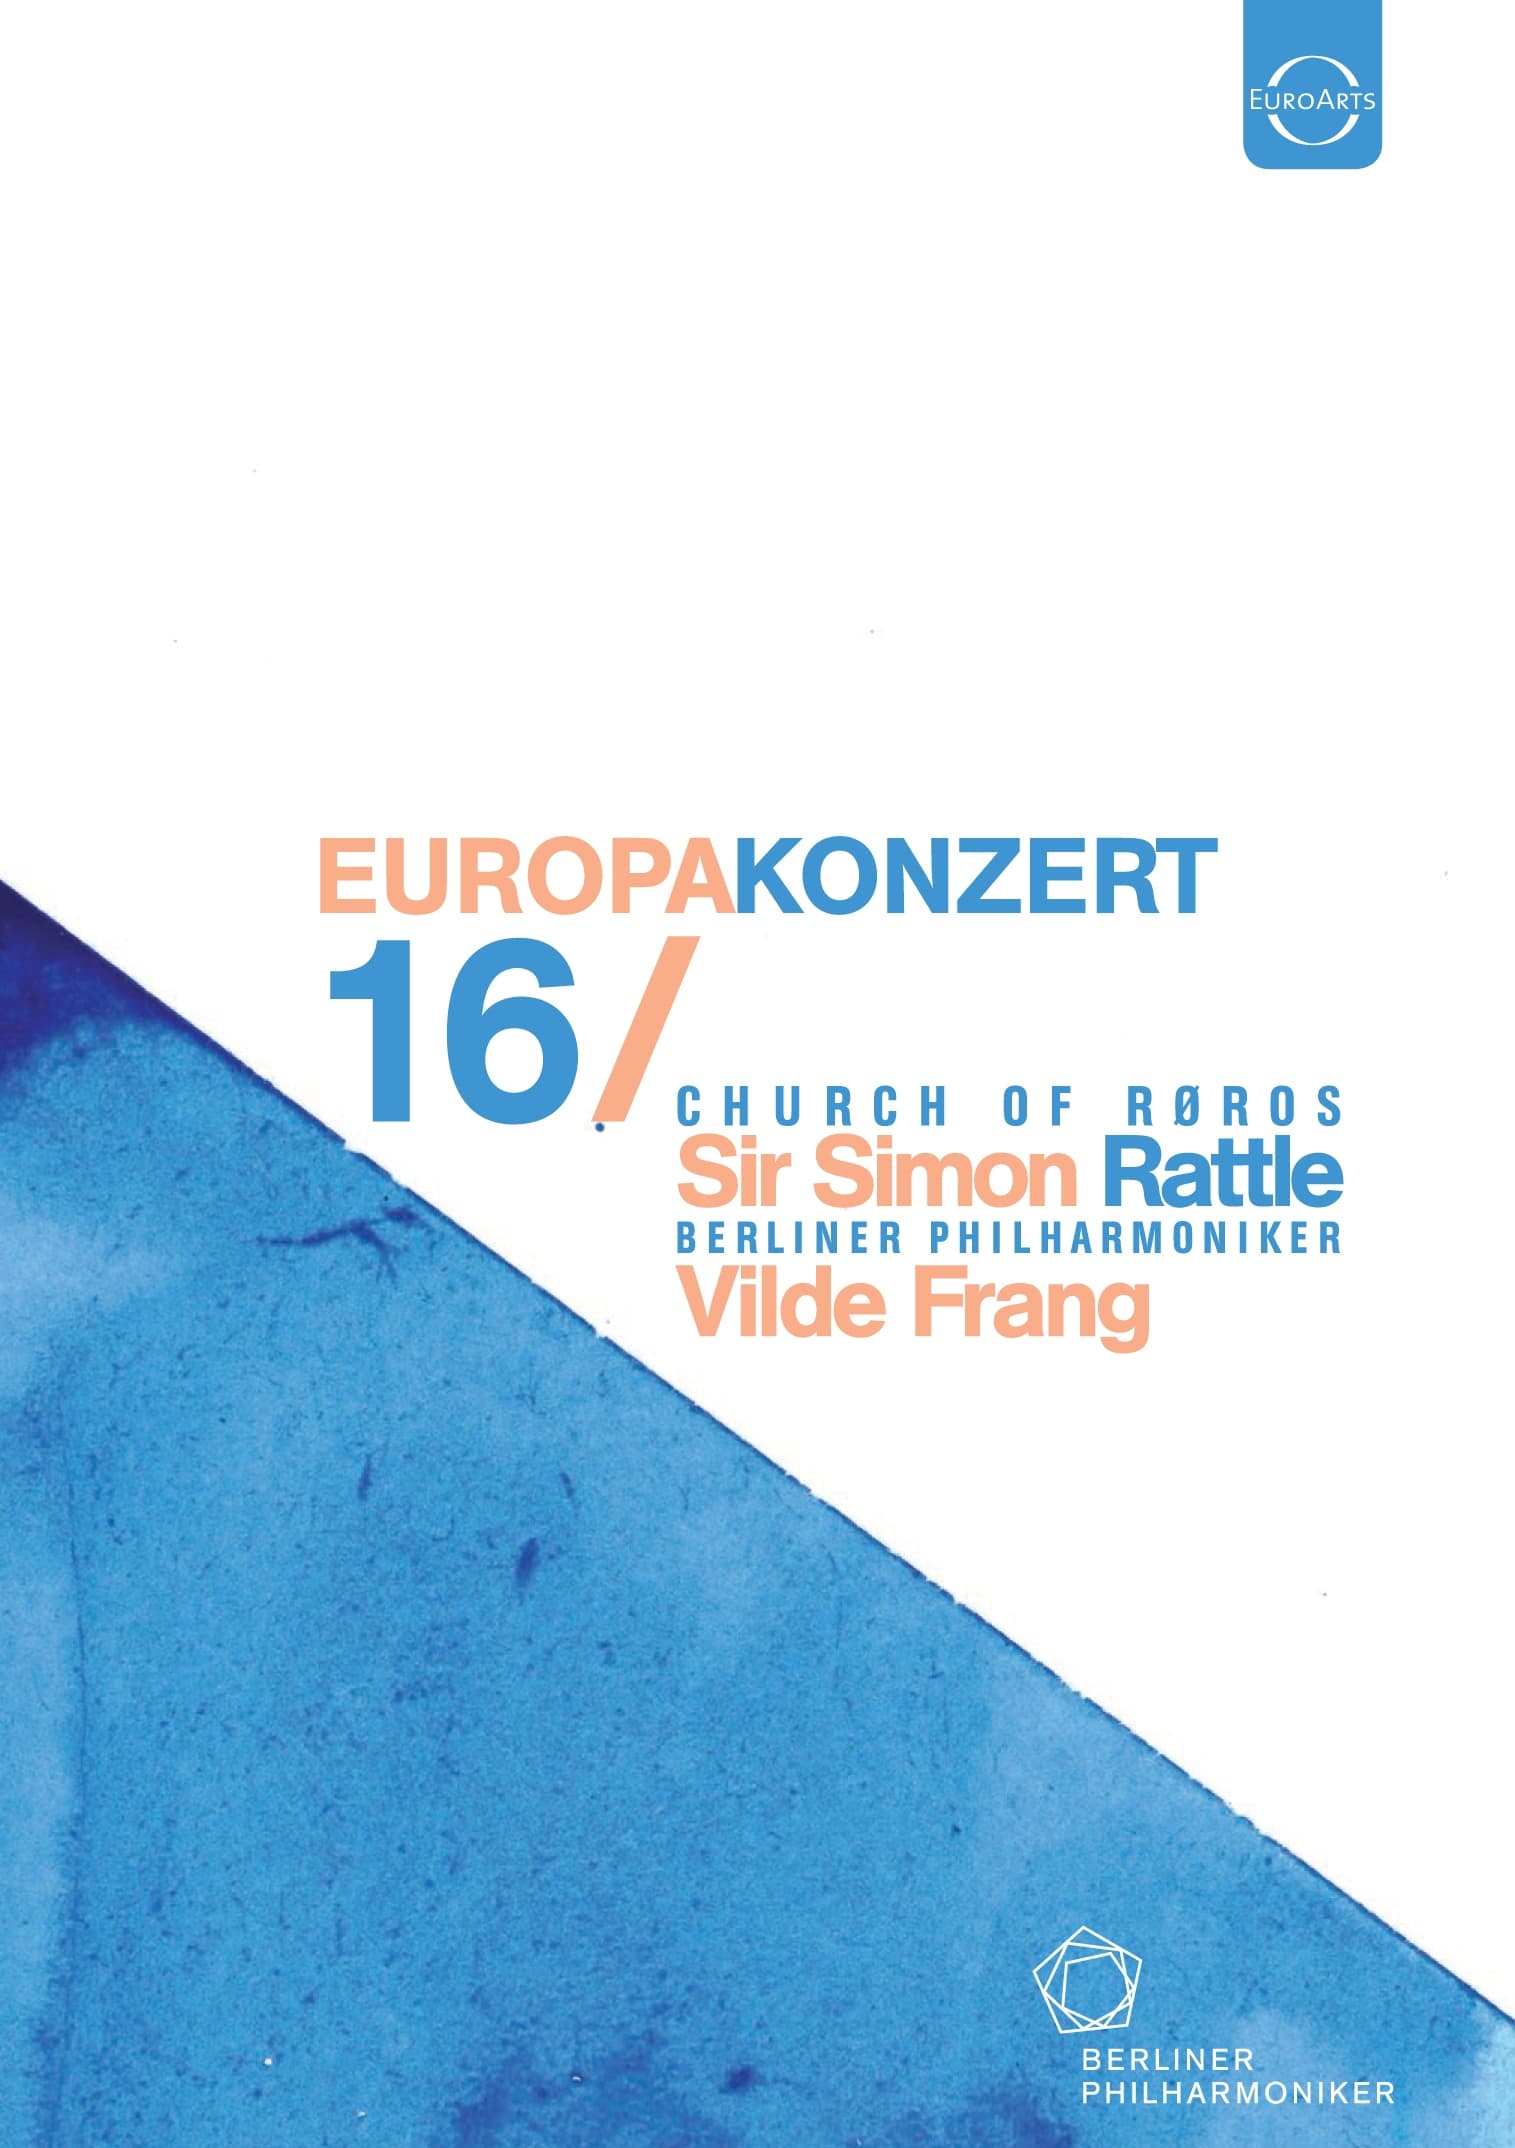 Berliner Philharmoniker - Europakonzert 2016